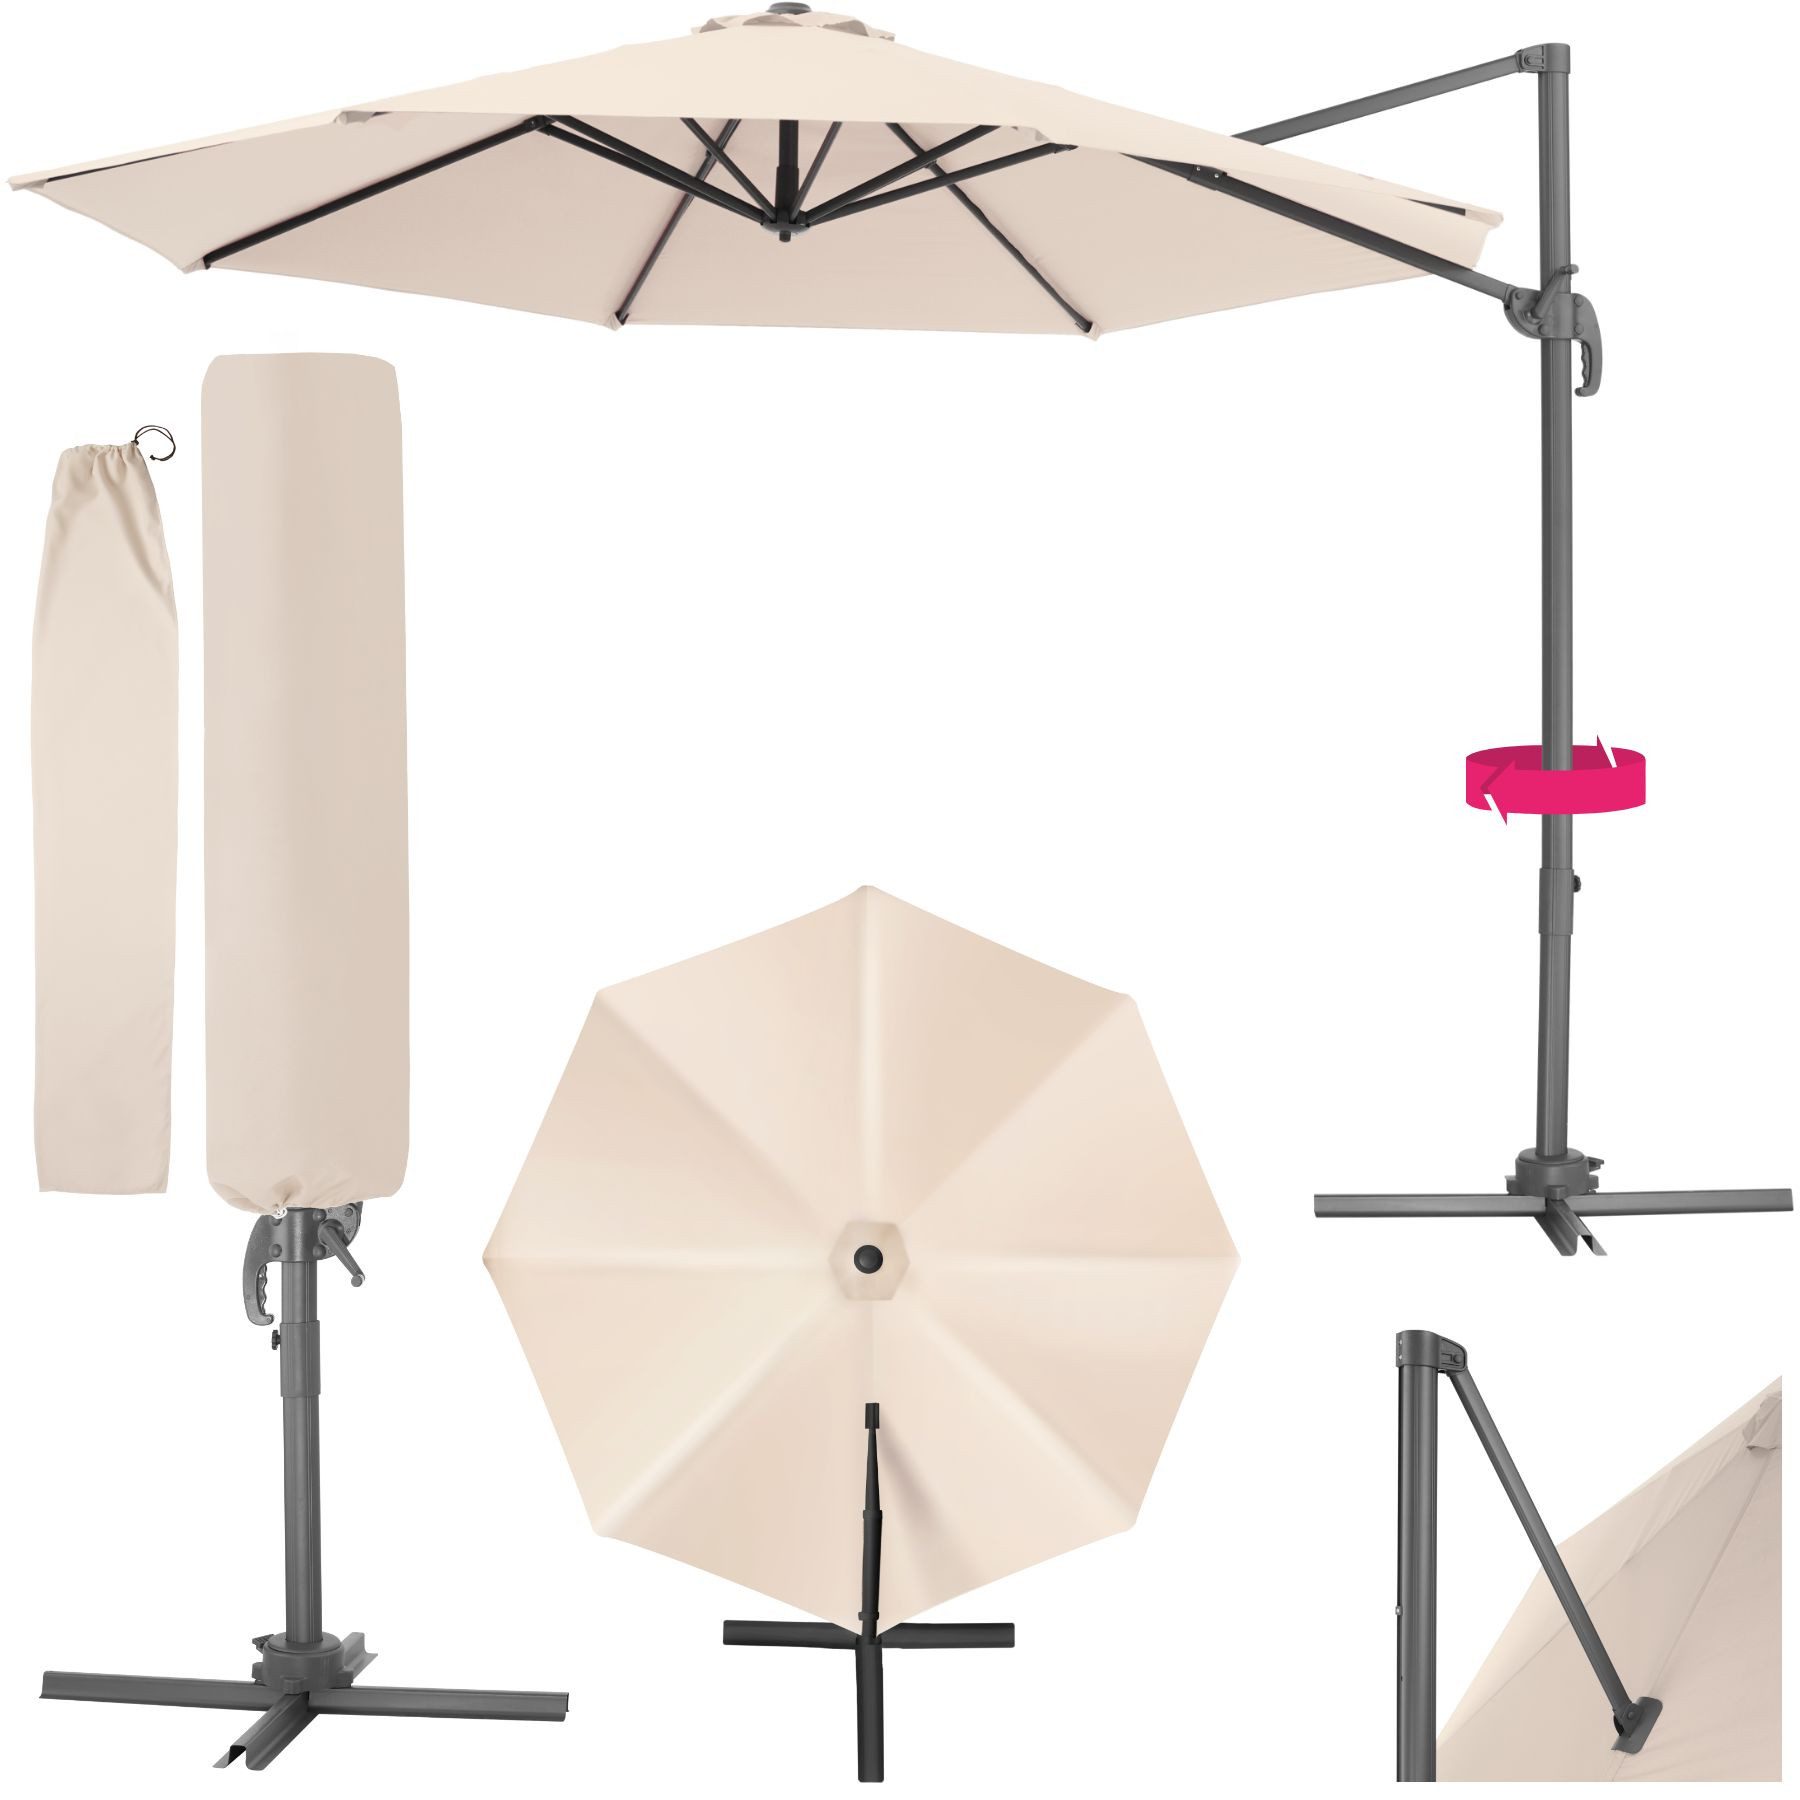 tectake Sonnenschirm Daria, Set mit Schutzhülle für Terrasse oder Garten, Parasol inkl. Schutzhülle in Schrimfarbe, 360° drehbar